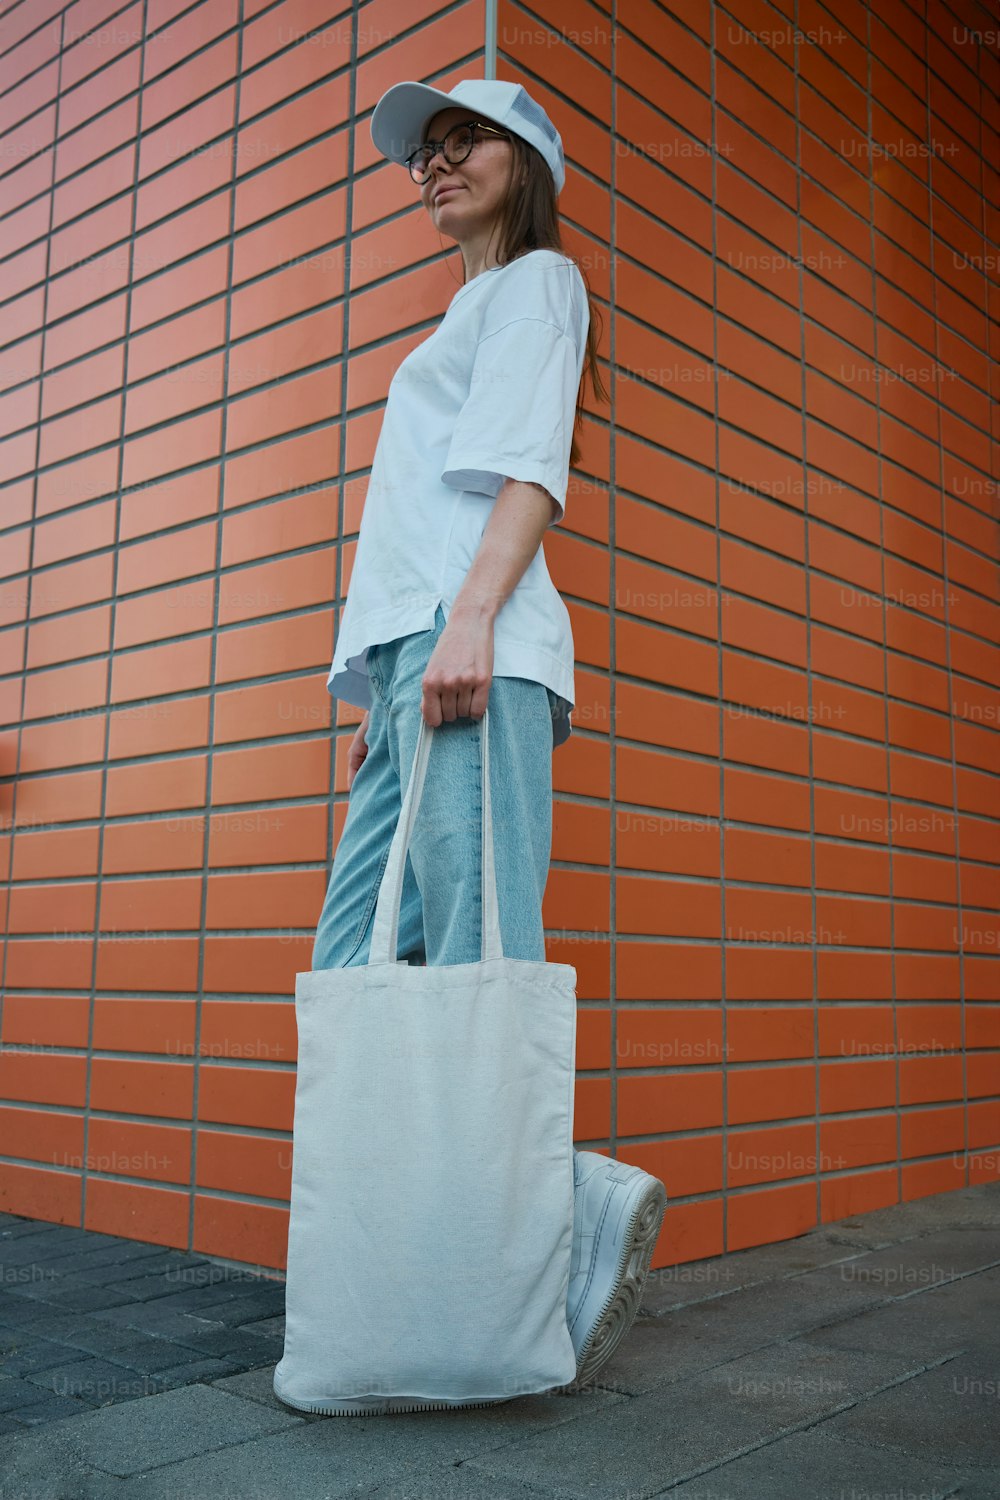 벽돌 벽 앞에 서 있는 하얀 가방을 �들고 있는 여자